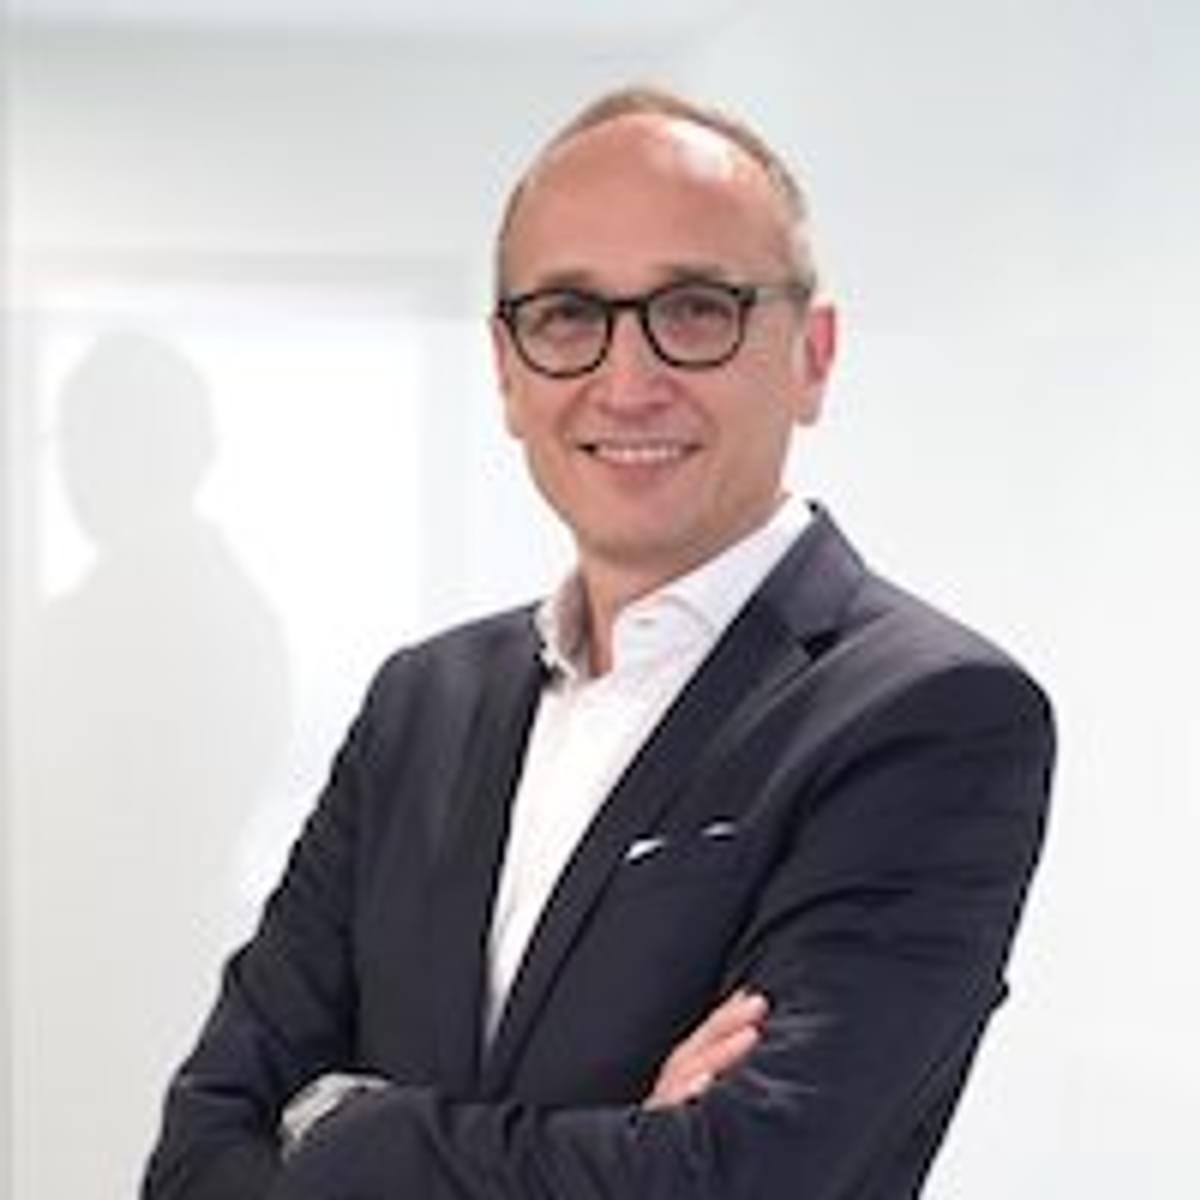 Flex IT stelt Andreas Mayer aan als nieuwe CEO image